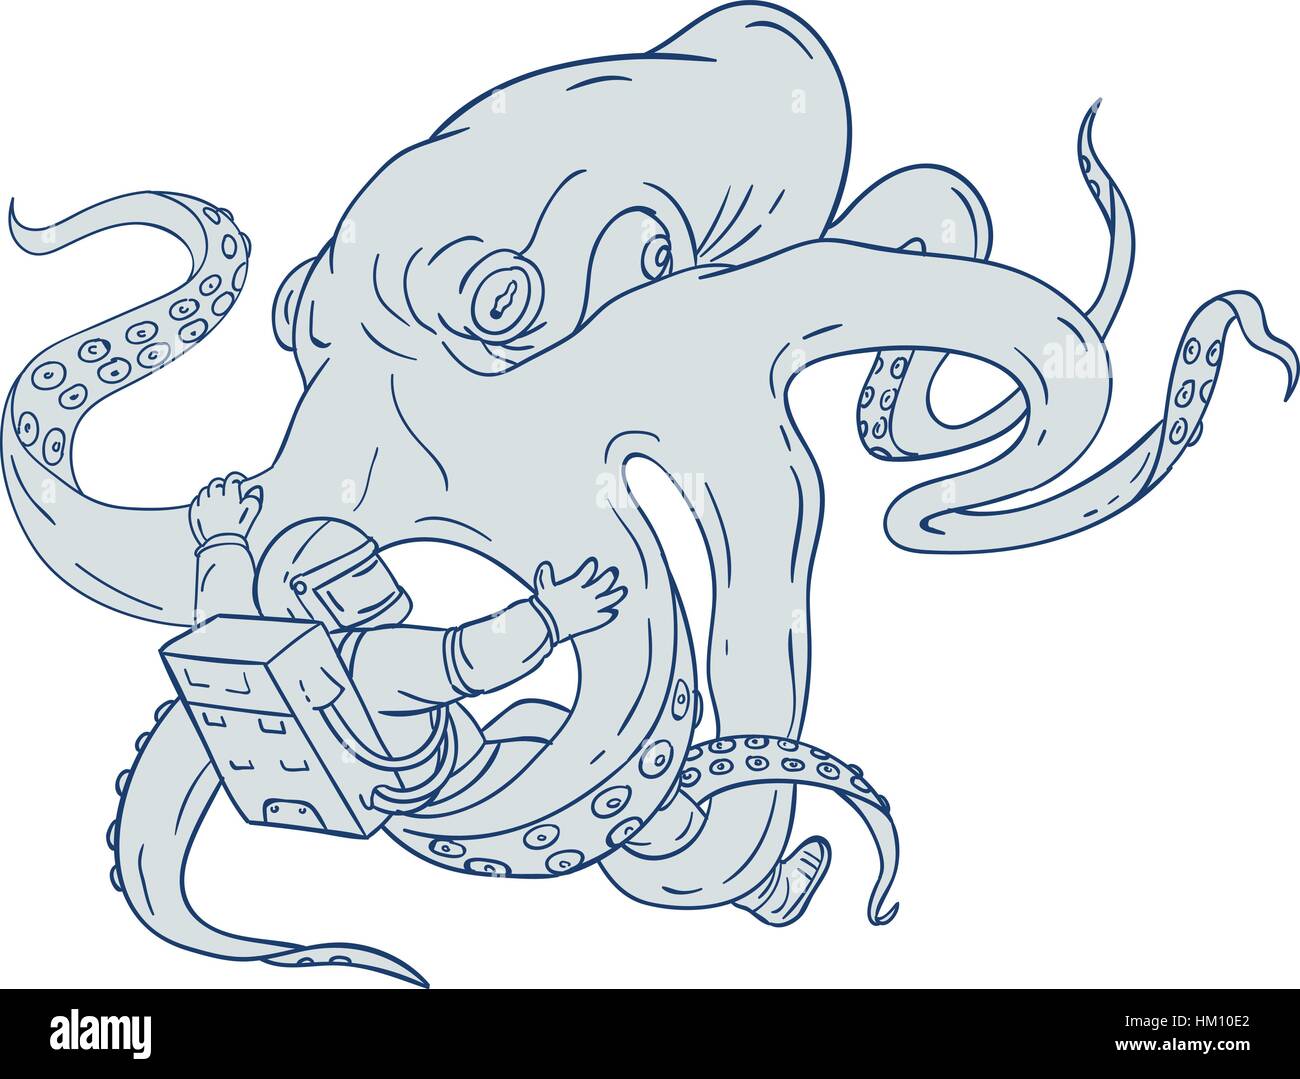 Croquis dessin illustration style de lutte contre une pieuvre géante un astronaute astronaute tenant avec ses tentacules sur fond blanc isolé. Illustration de Vecteur